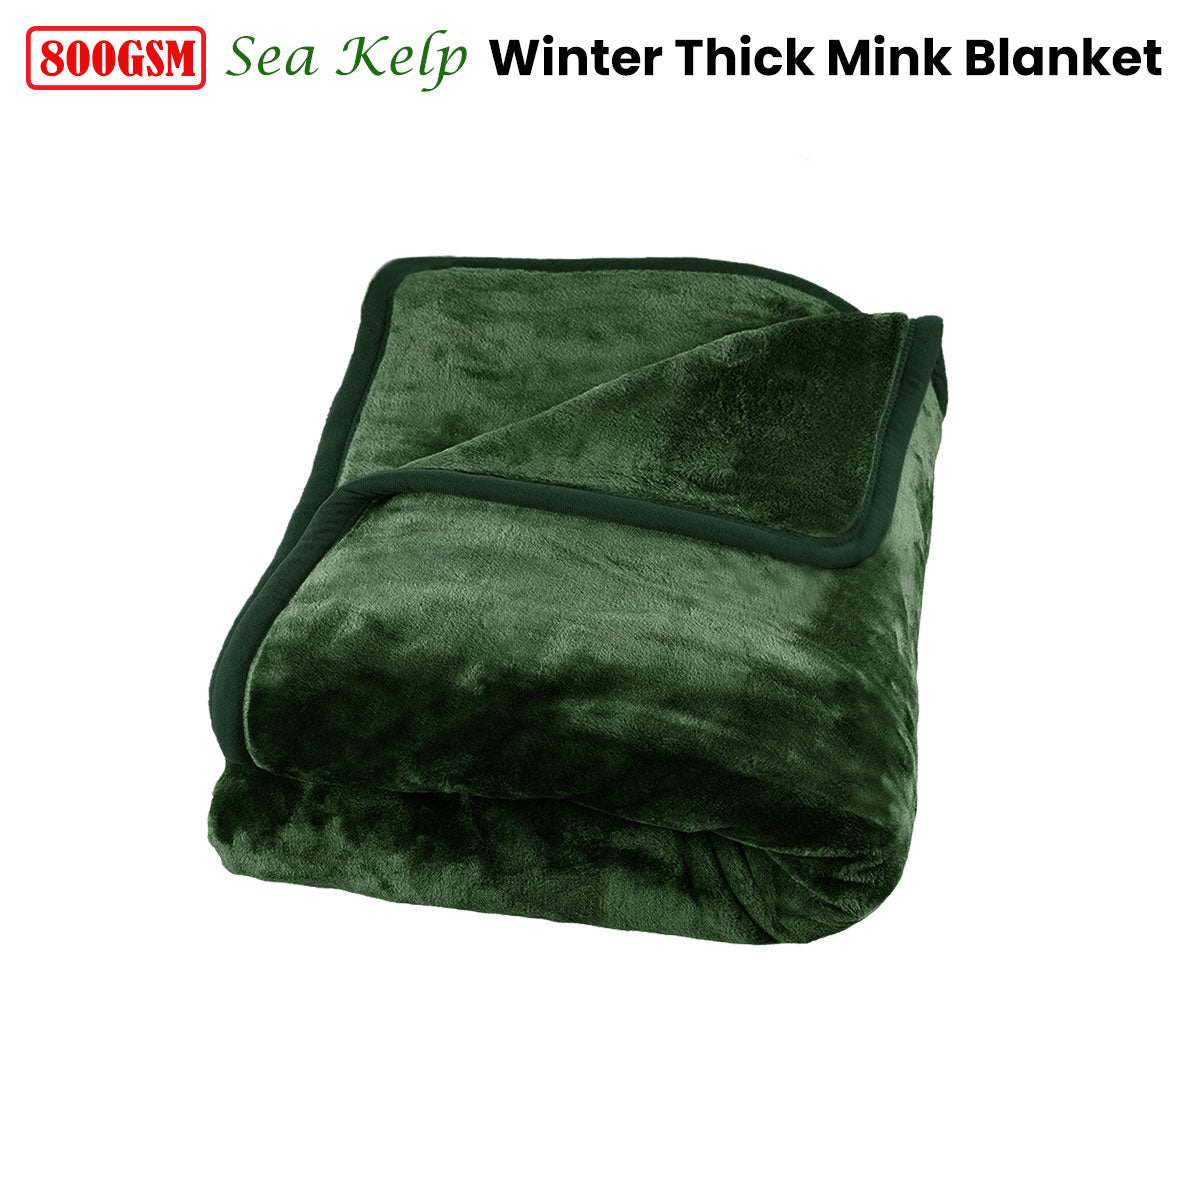 800GSM Luxury Winter Thick Mink Blanket Sea Kelp King